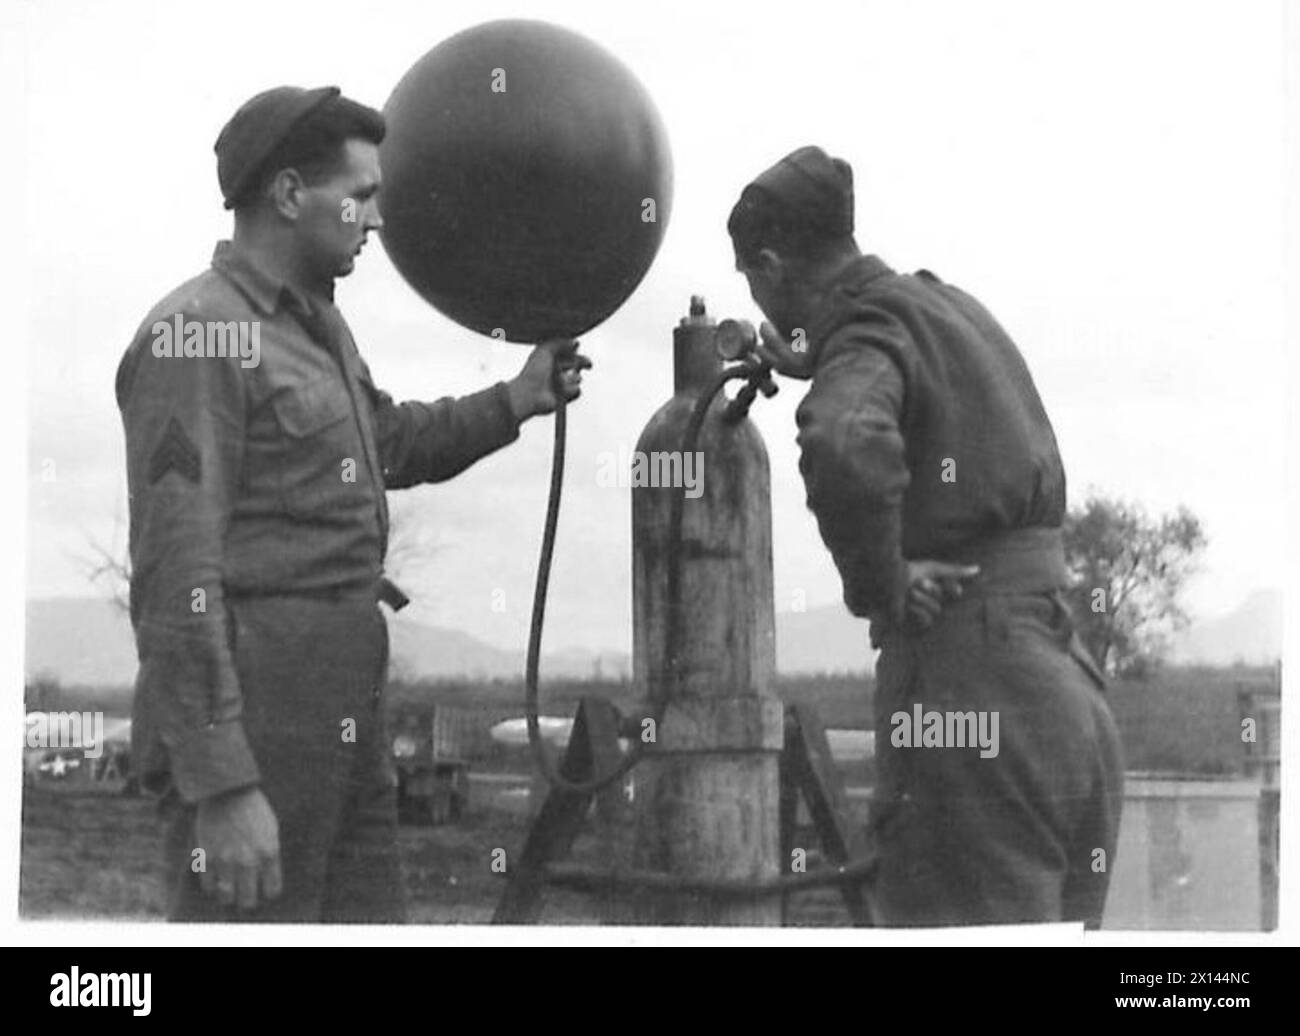 ITALIA : QUINTO ARMYMEN CHE DICE "NO" AL GENERALE - S/SGT. Craig con l'assistenza del Cpl. T. Langham dello Yorkshire riempiendo un pallone di osservazione con gas dell'esercito britannico Foto Stock